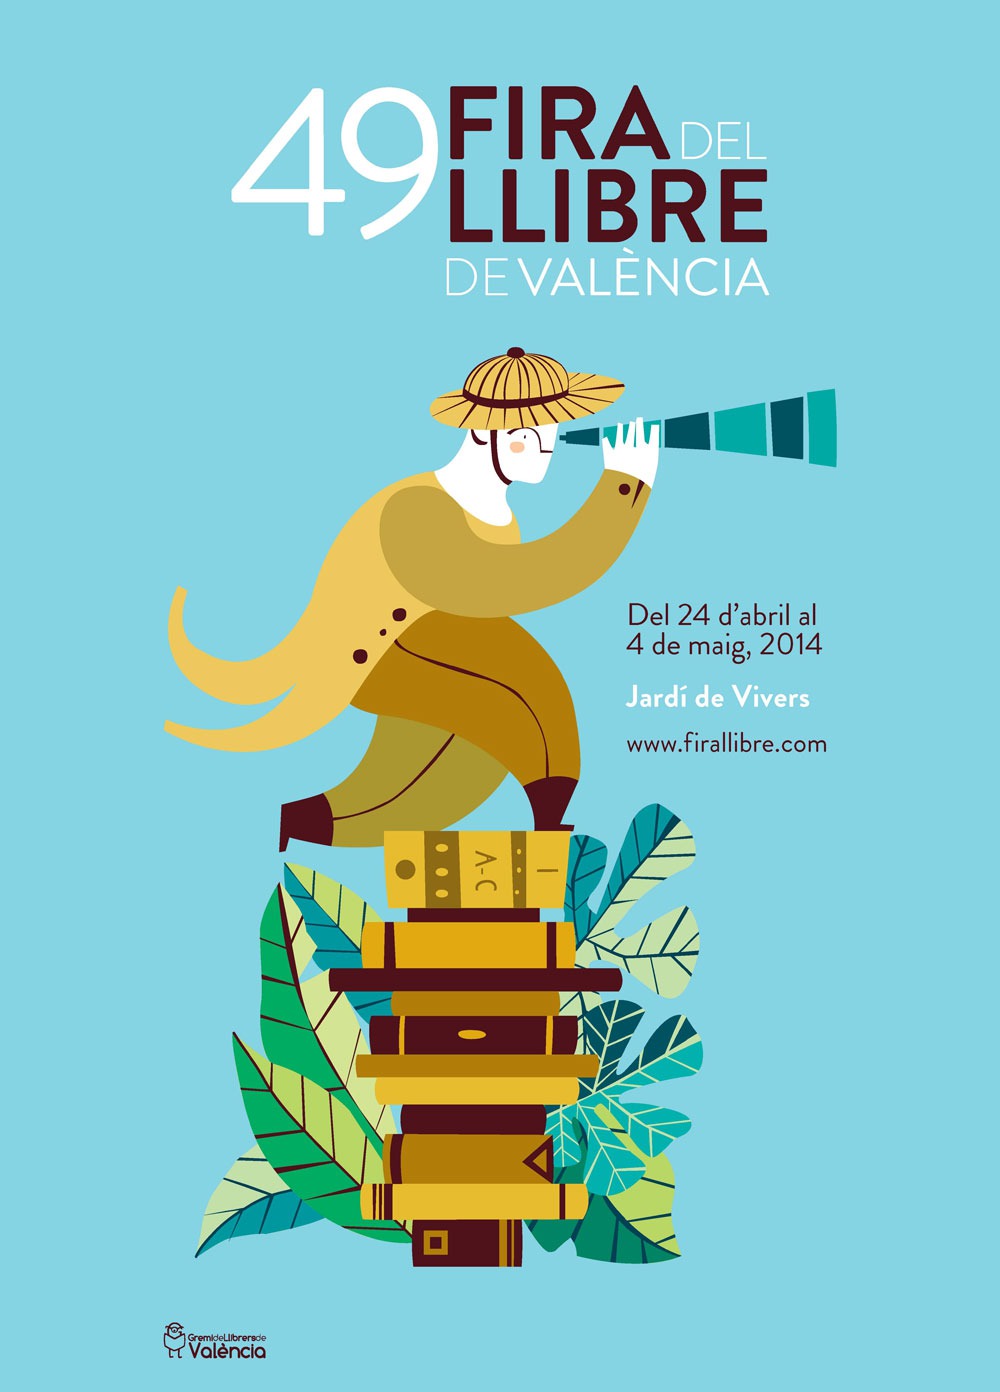 La Feria del Libro de Valencia tendrá lugar del 24 de abril al 4 de mayo del 2014